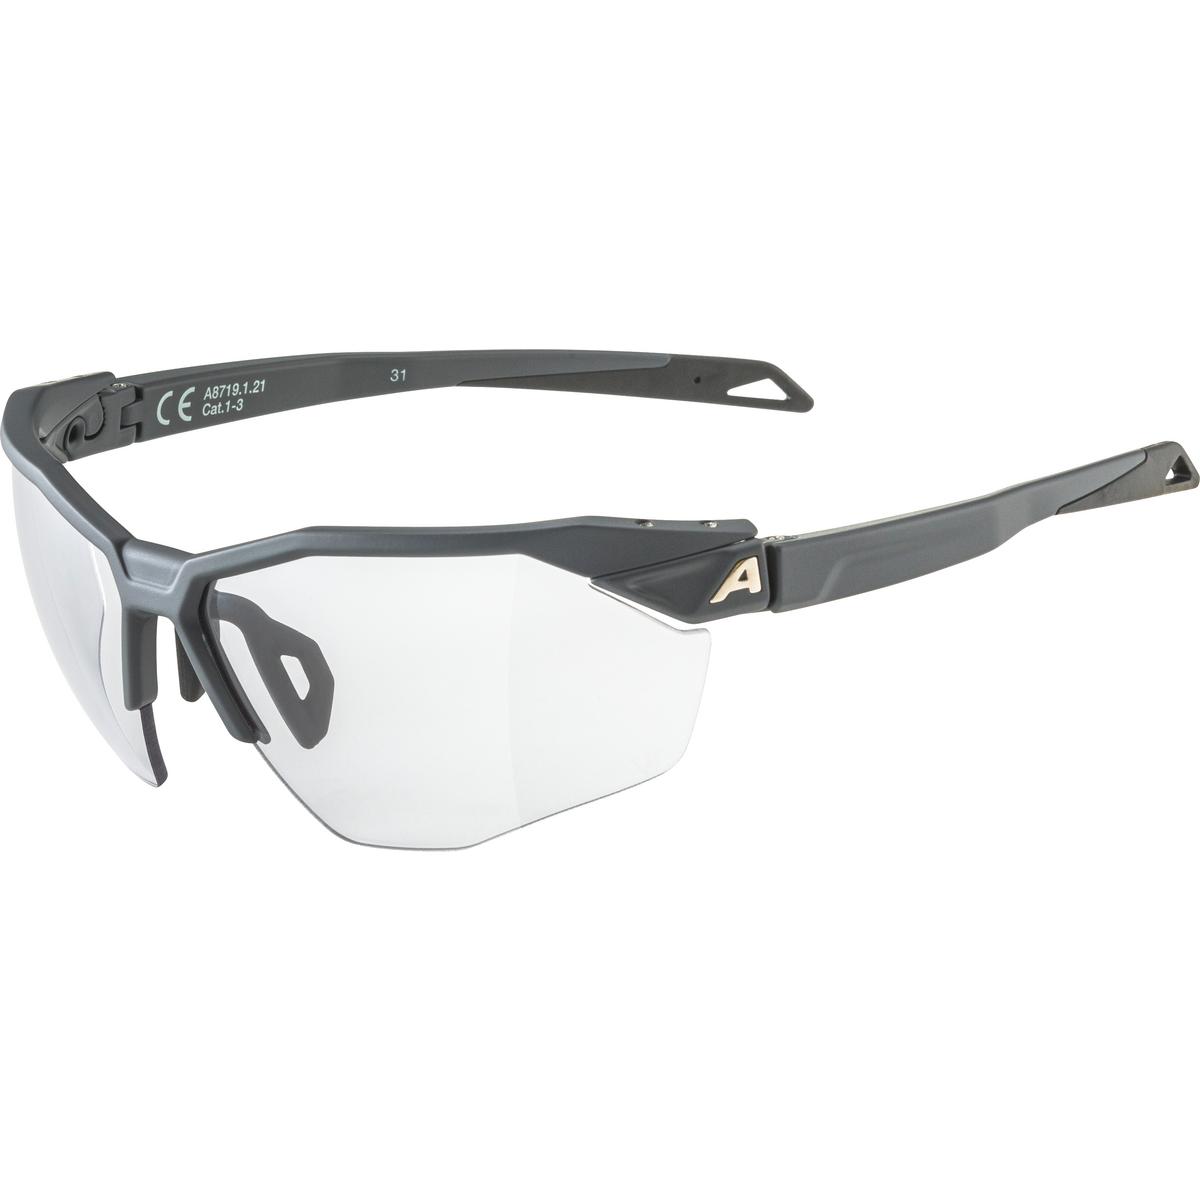 Produktbild von Alpina Twist Six HR V Brille - midnight-grey matt / Varioflex black